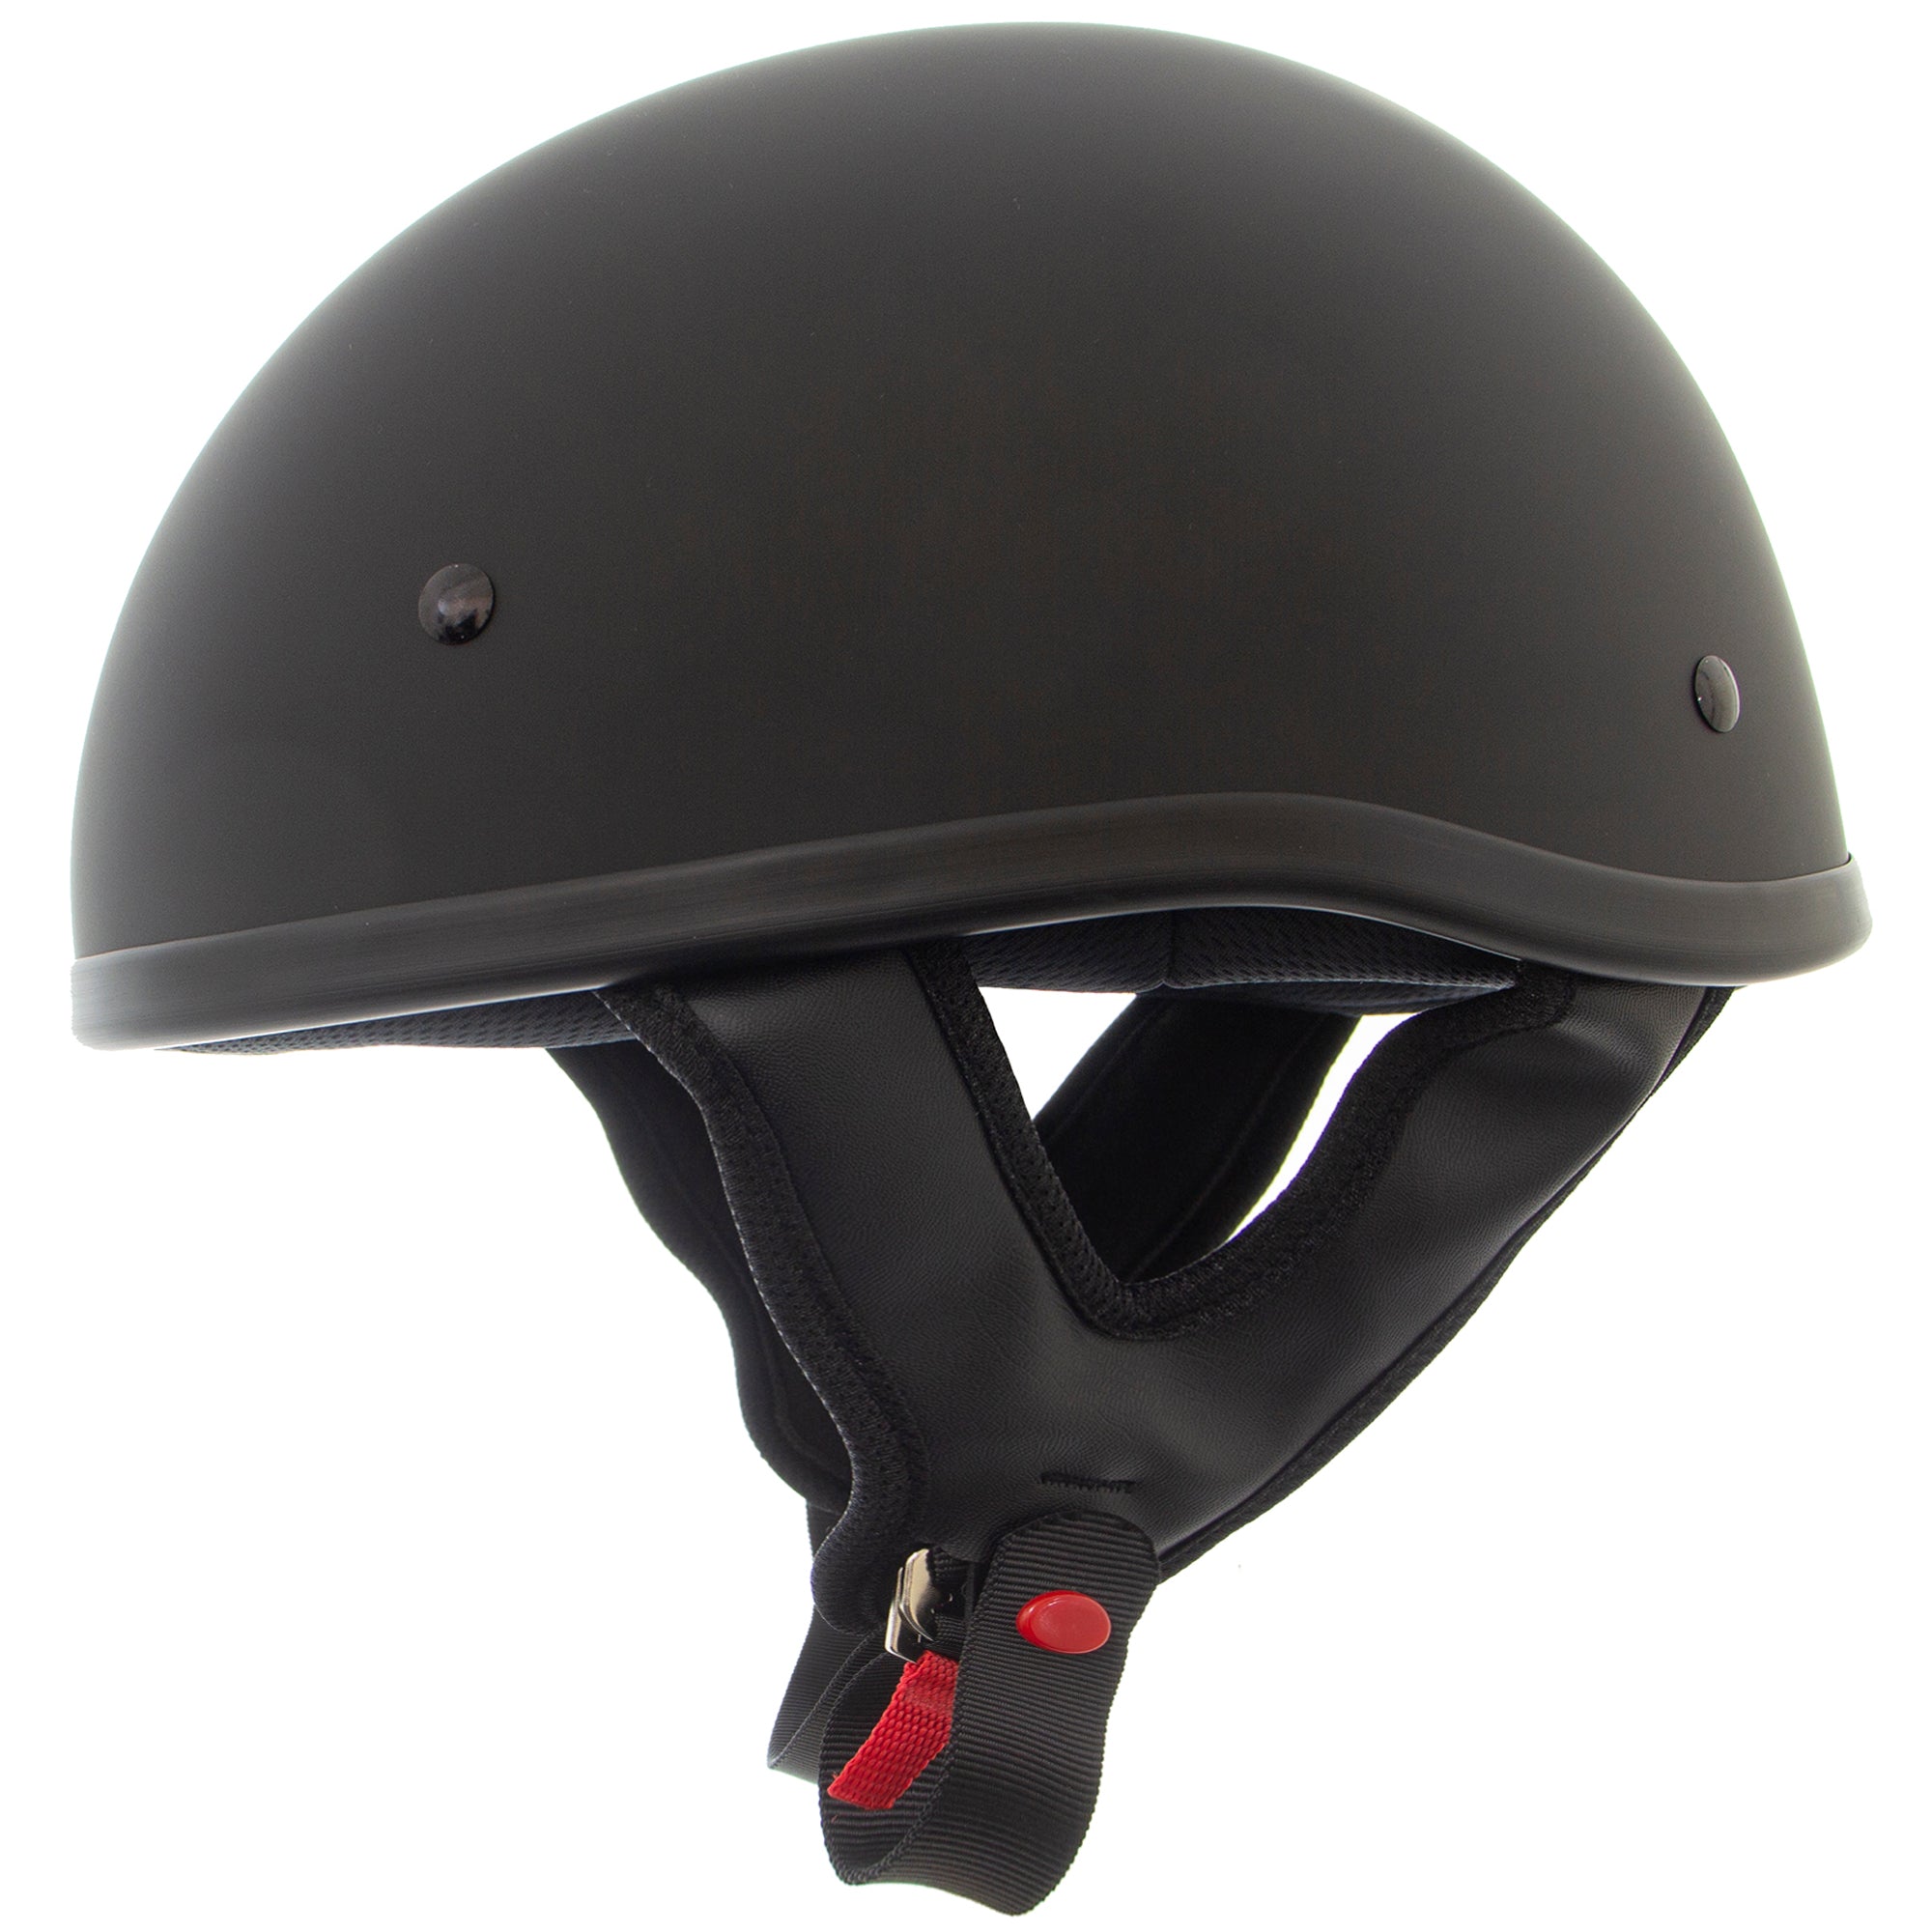 3EIYE'S Motorcycle Helmet, Thin Skull Cap Half Helmet for Adult Men ,  Novelty Half Shell Helmet, Half Face Helmet for Cruiser Scooter Chopper  (Dull